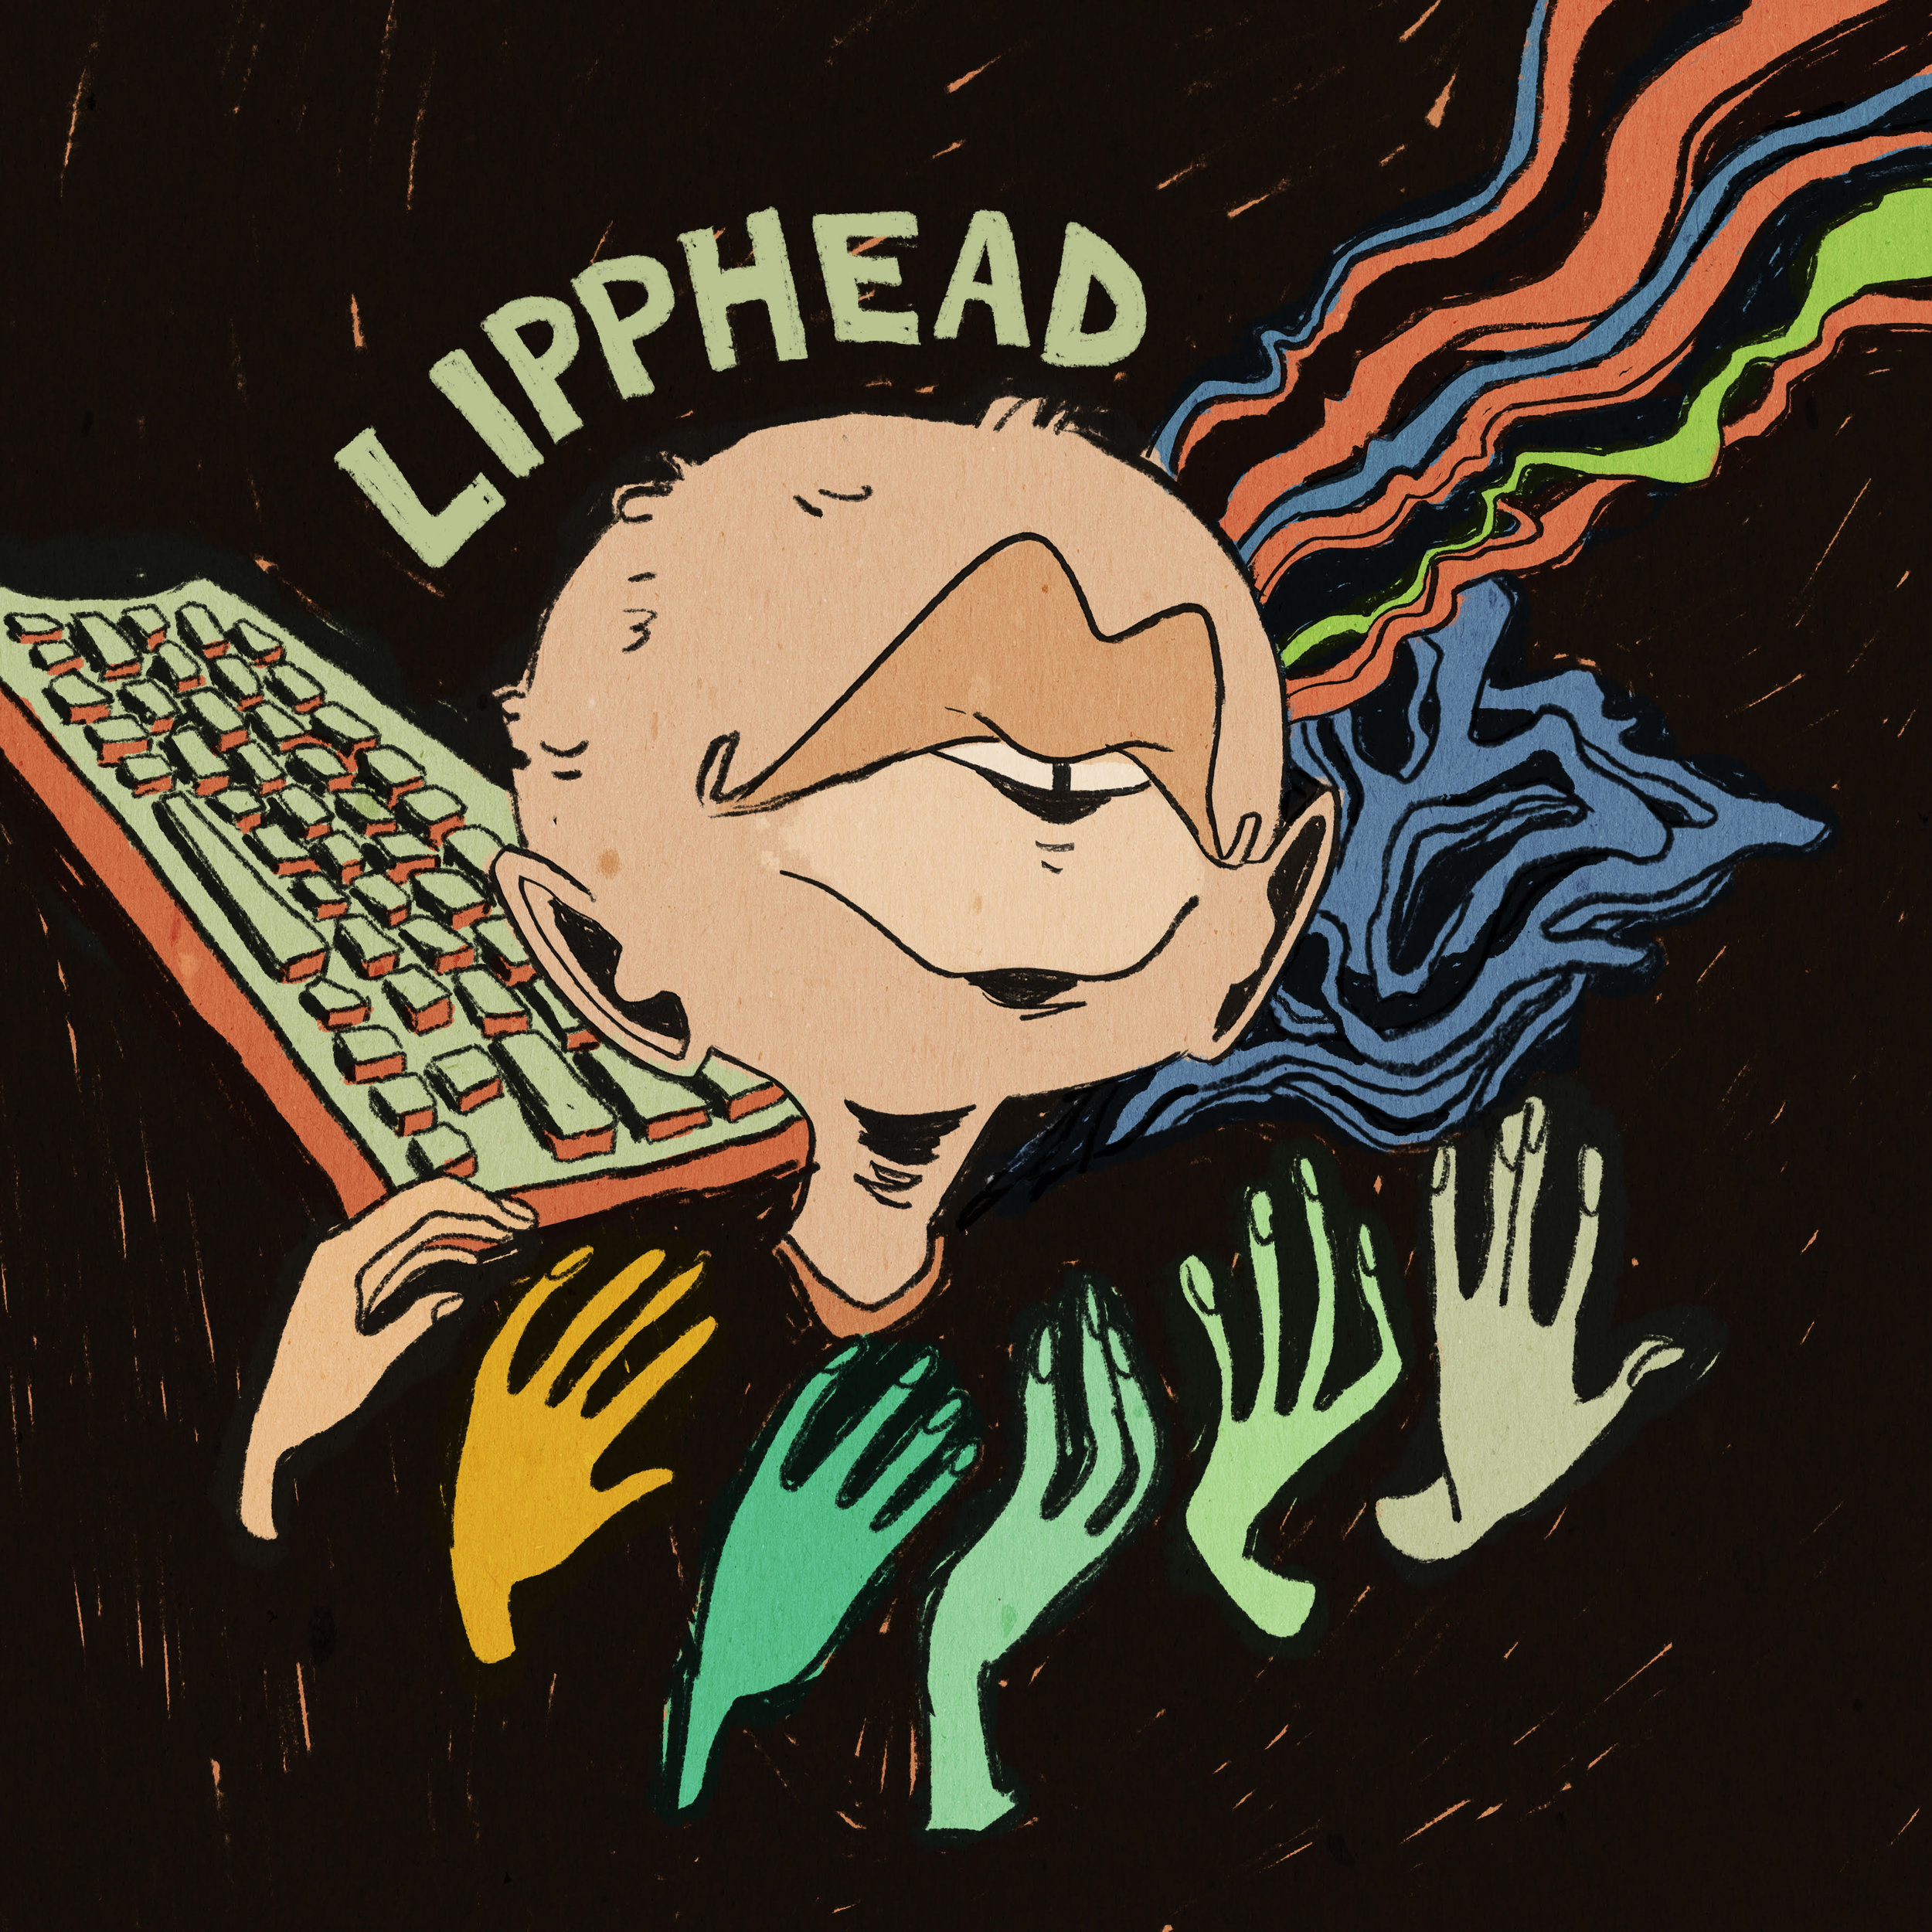 Lipphead - Lipphead – $2.00